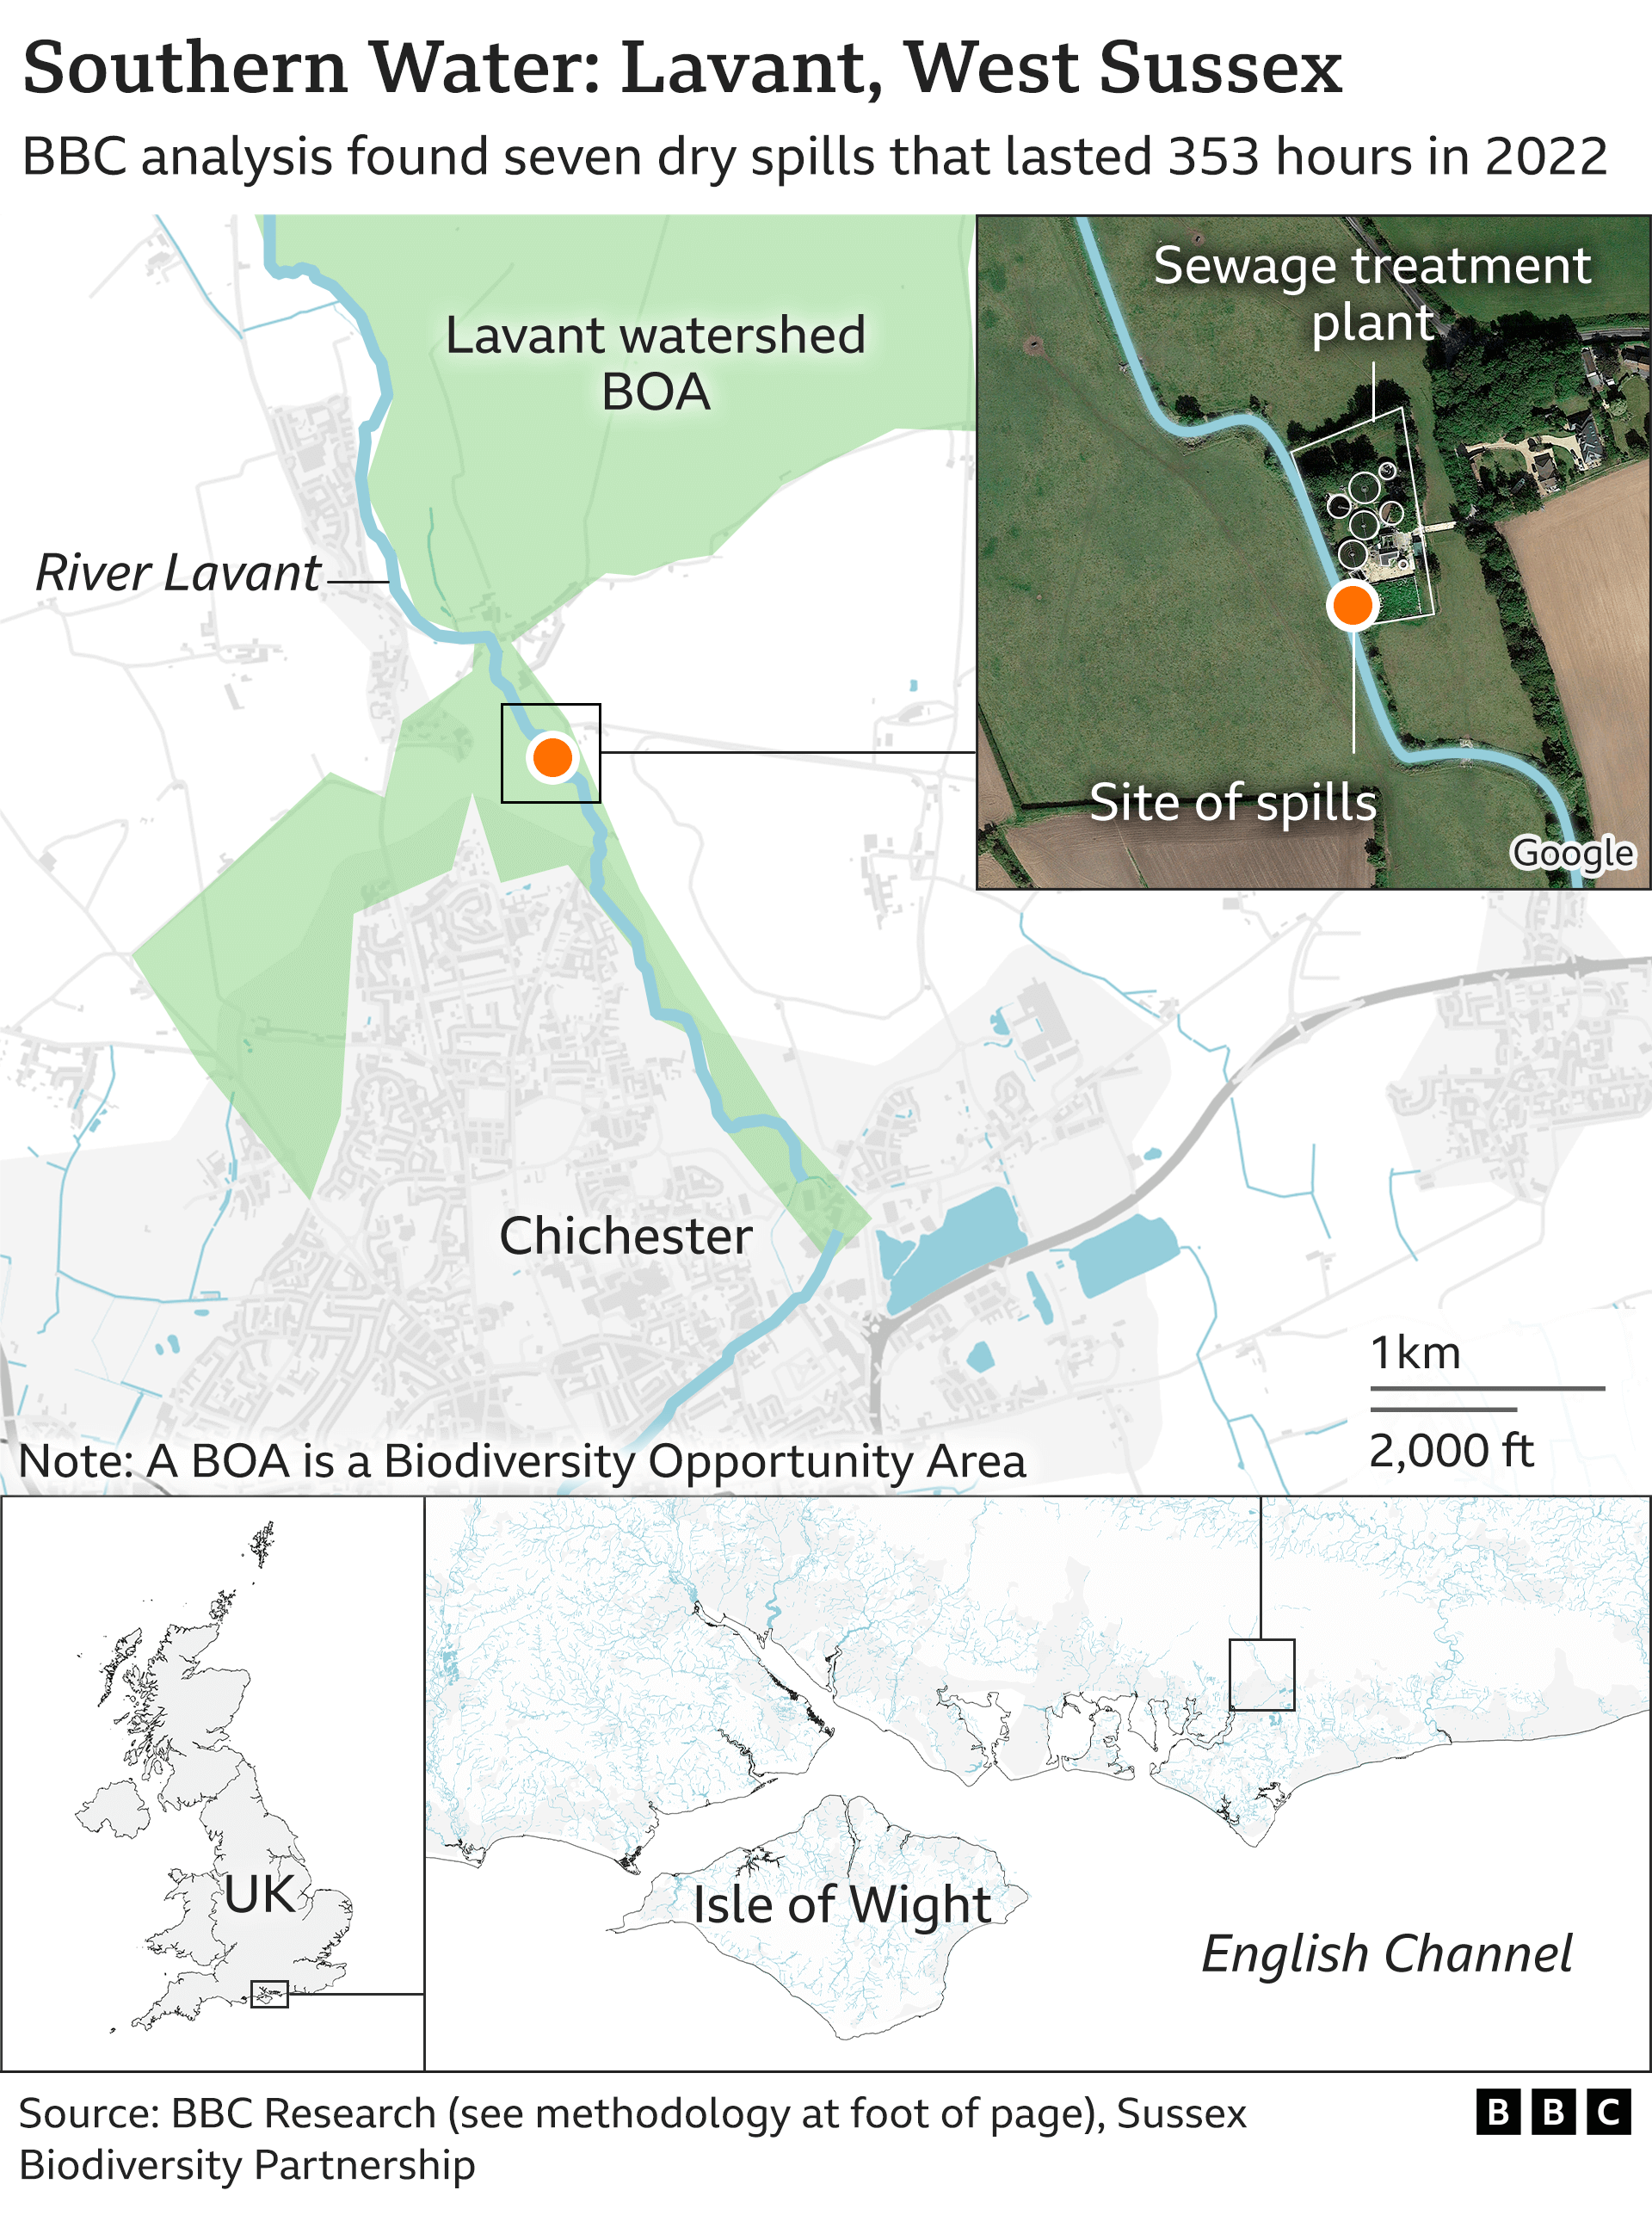 Карта, показывающая Лавант, Западный Суссекс, где в 2022 году произошло шесть сухих разливов продолжительностью 314 часов